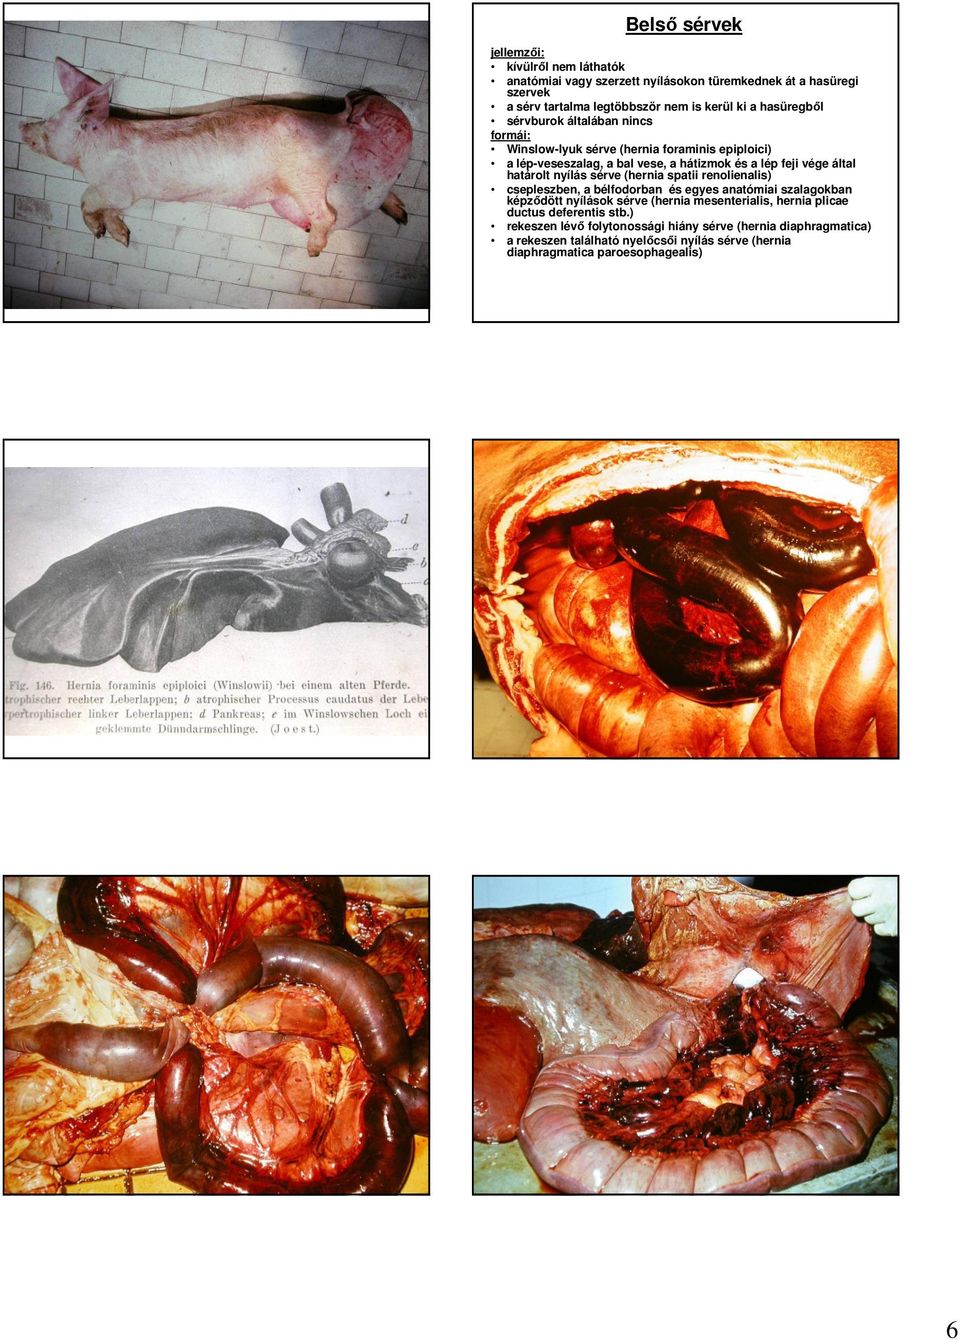 határolt nyílás sérve (hernia spatii renolienalis) csepleszben, a bélfodorban és egyes anatómiai szalagokban képzıdött nyílások sérve (hernia mesenterialis, hernia